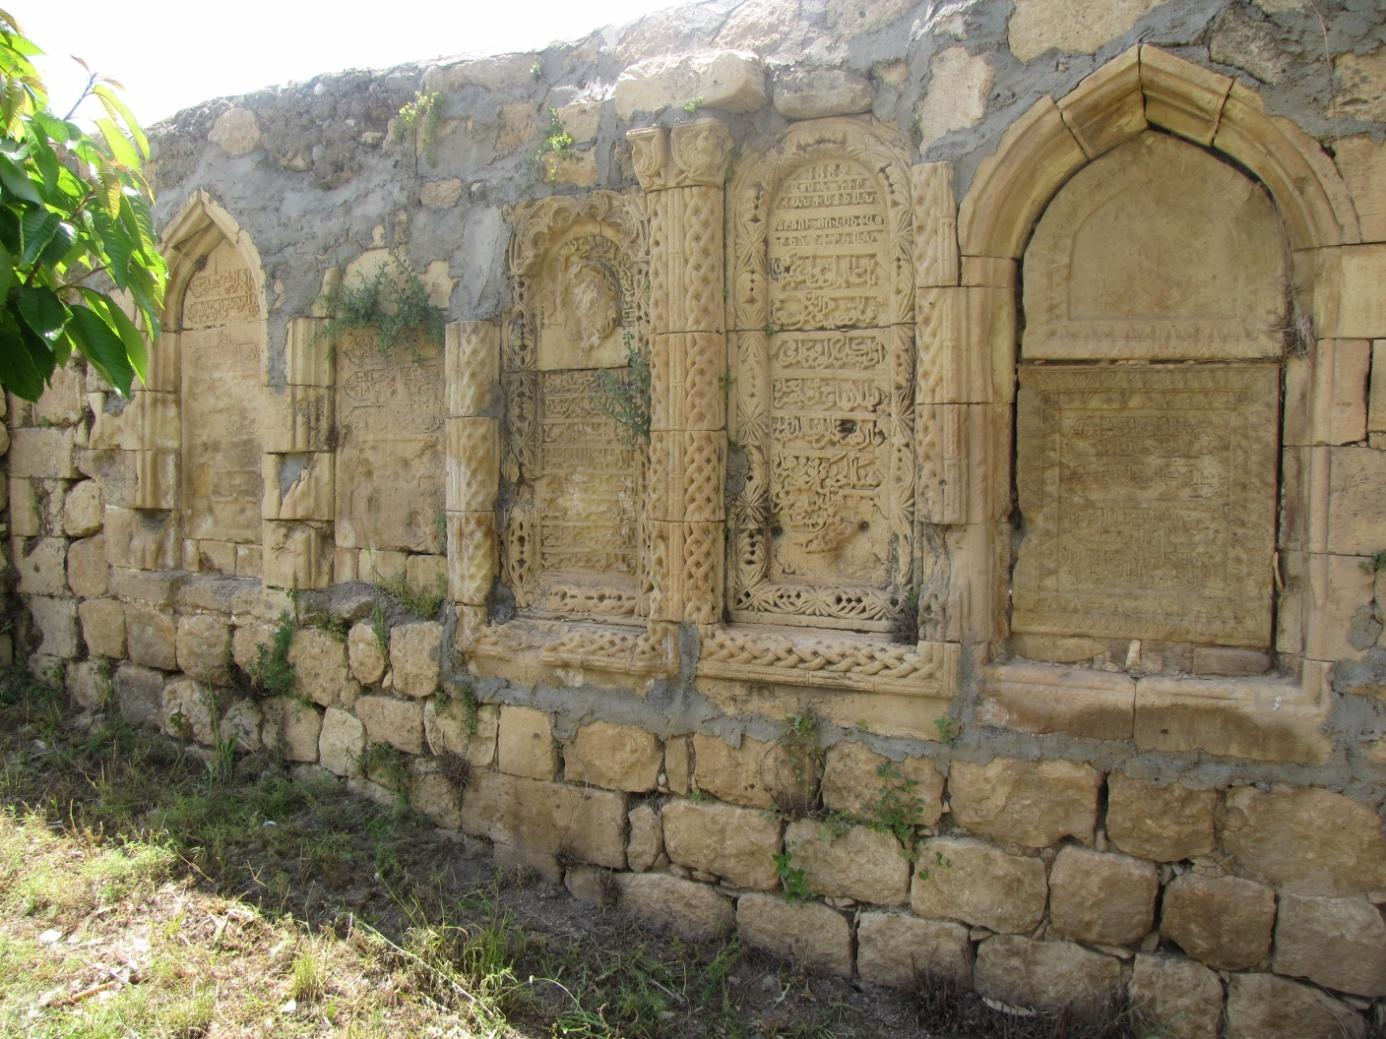 yanında bulunan bu yazıt Mardin Ermeni Kilisesi nin ne kadar eski olduğunu, Ermenilerin Mardin şehrinde M.S. 420 yılından önce de yaşadığını kanıtlaması açısından önemlidir.